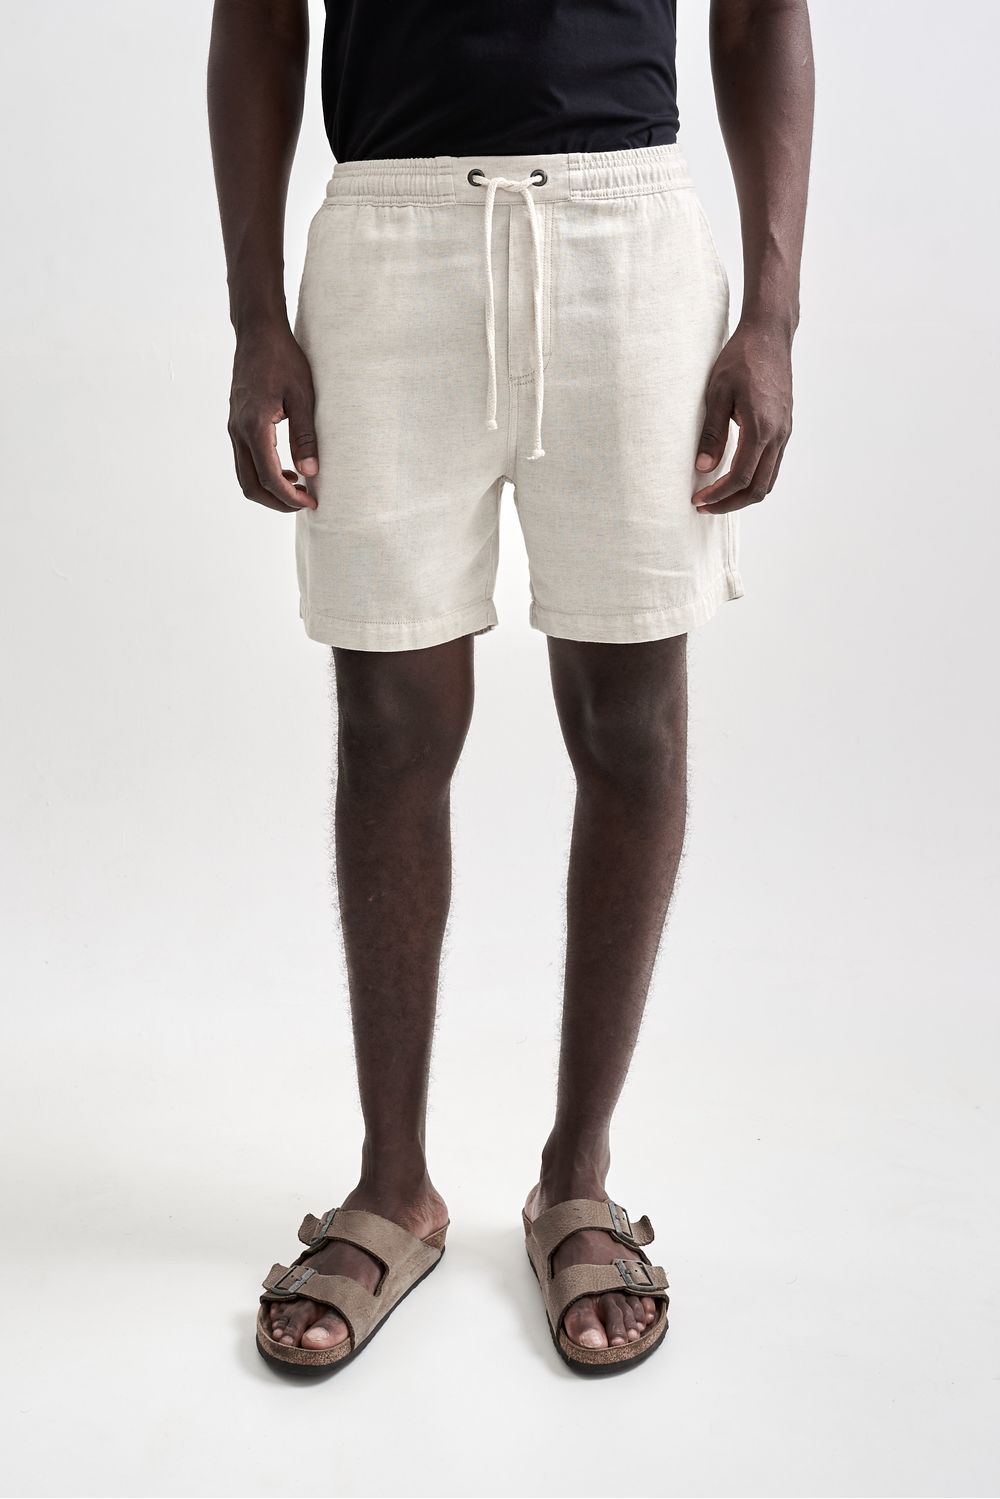 AUSTRAL - Shorts Linen Caraíva Natural